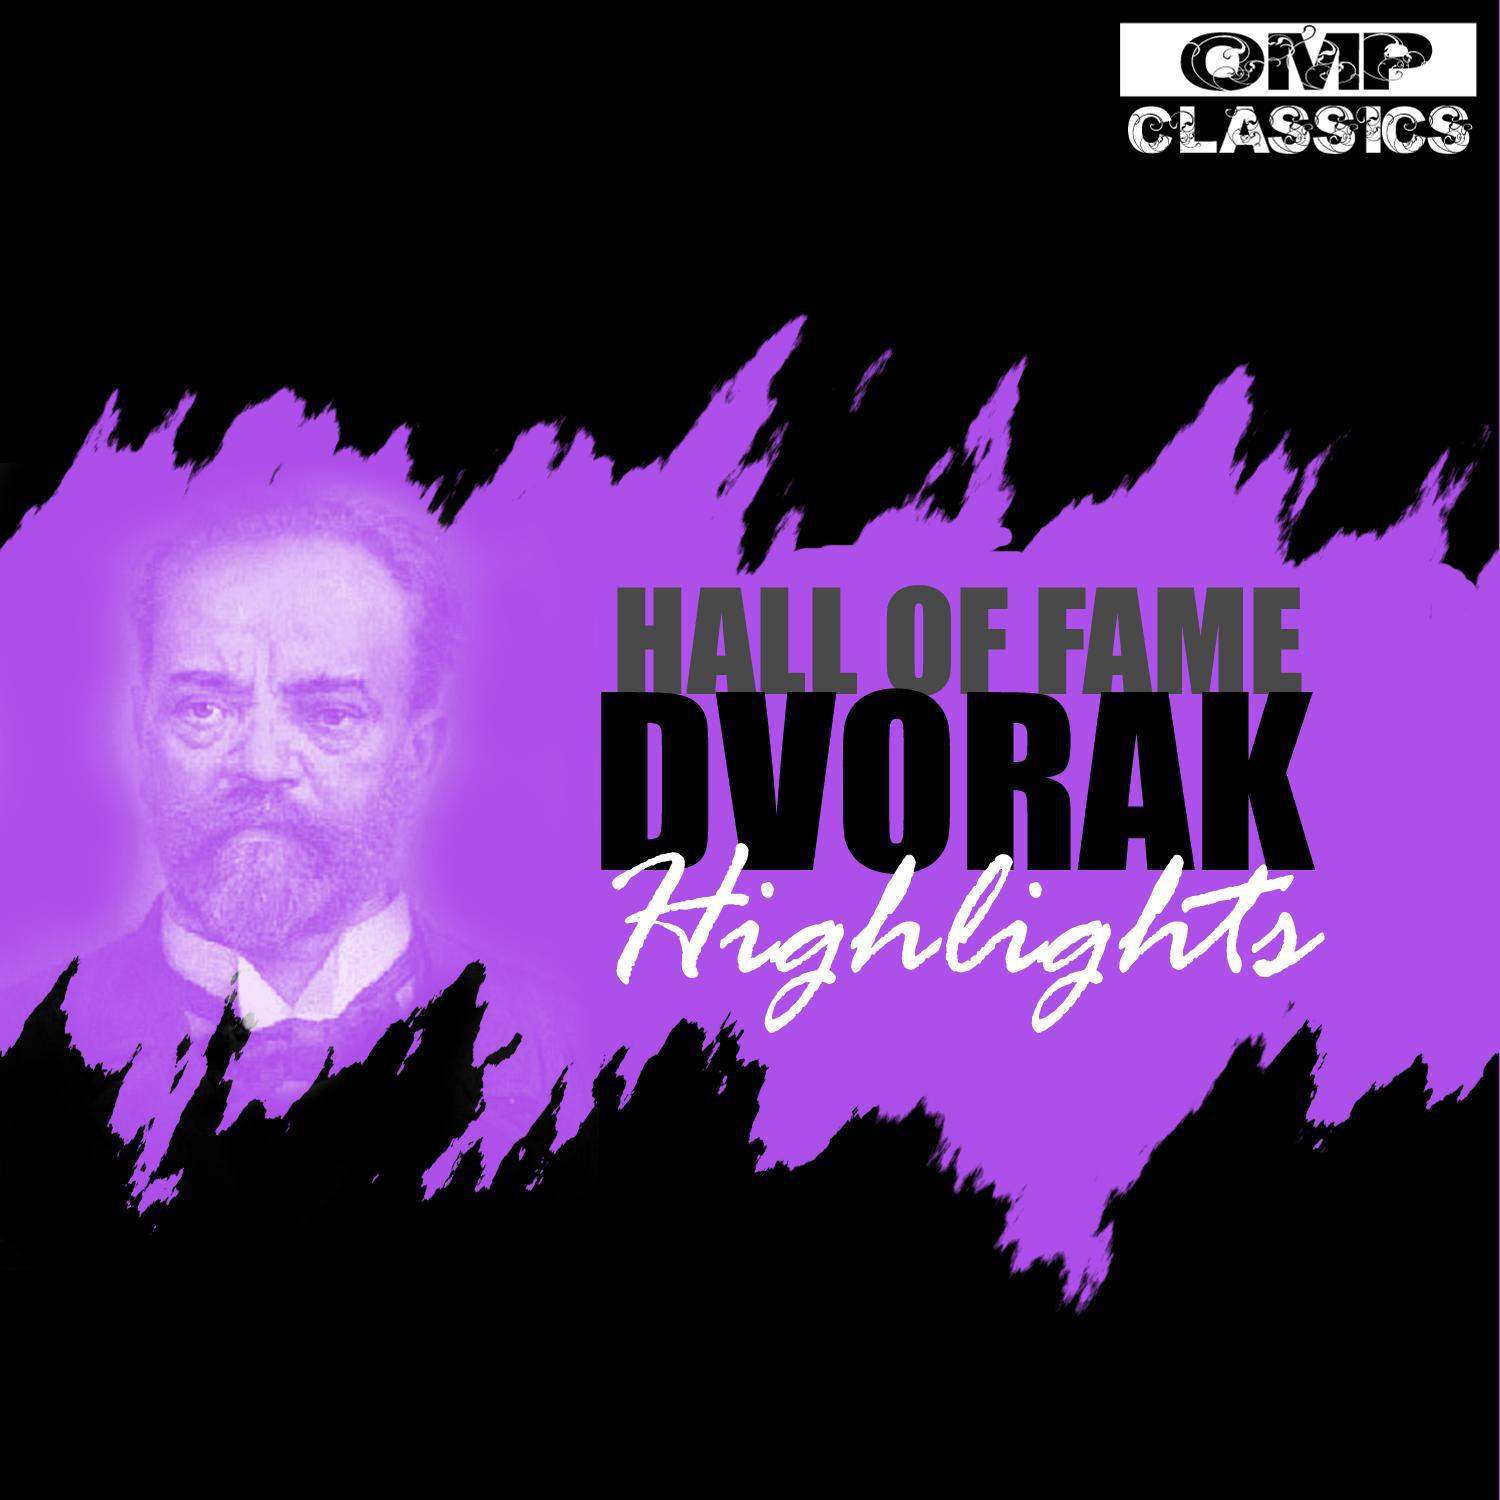 Hall of Fame: Dvorák Highlights